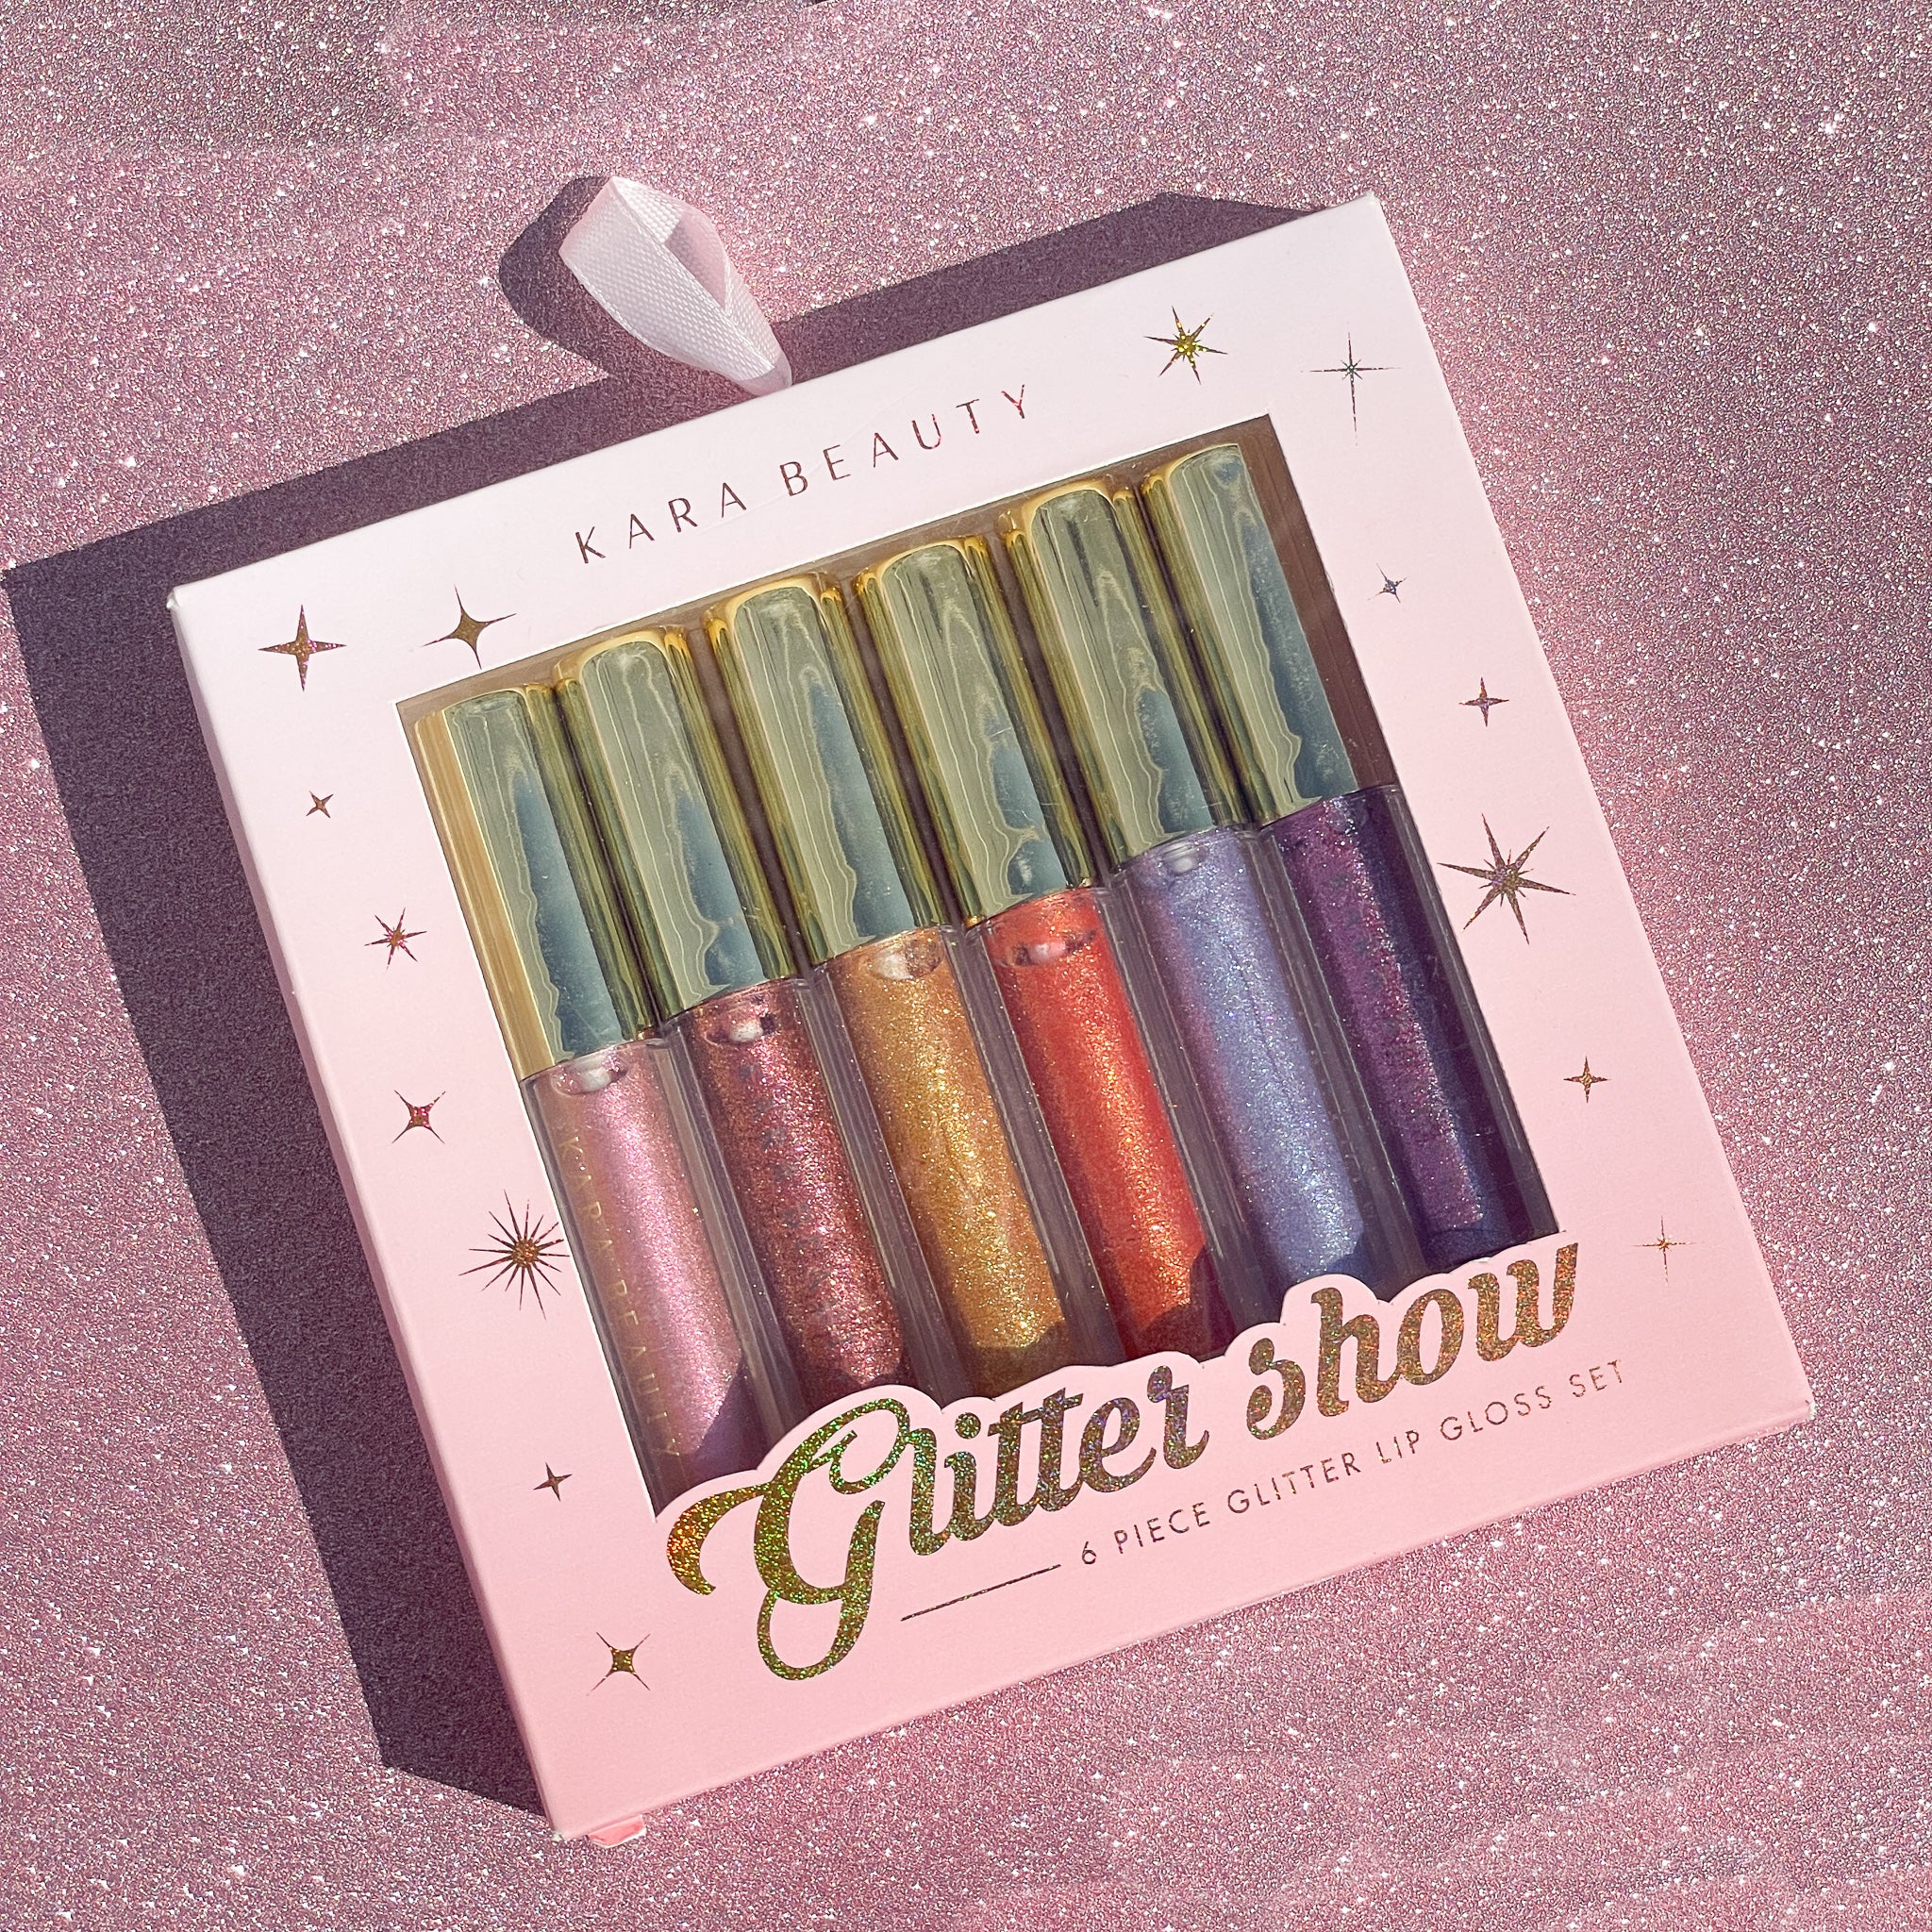 GLITTER SHOW 6 Piece Glitter Lip Gloss Set